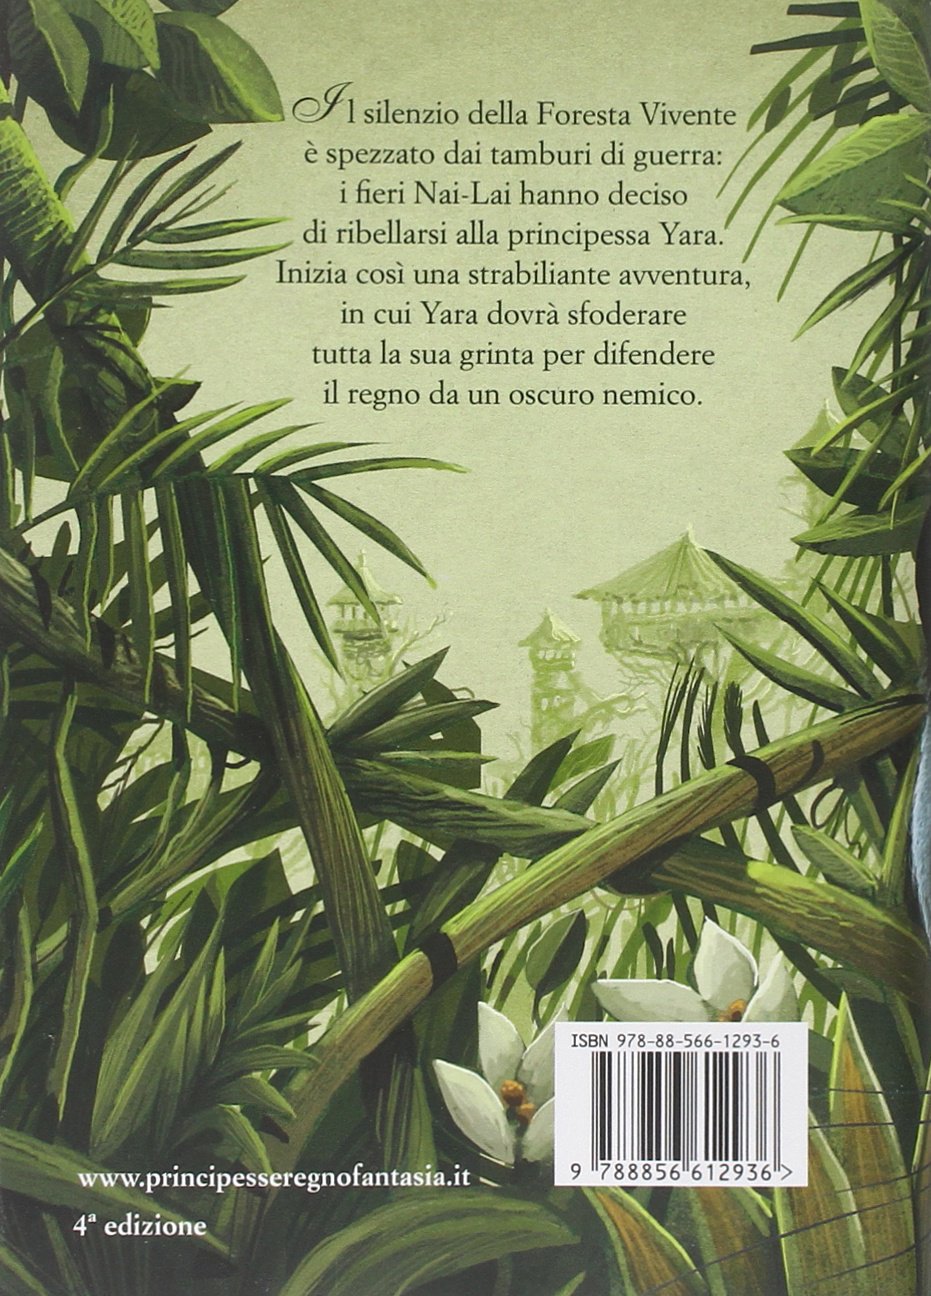 Tea Stilton - Principessa delle foreste. Principesse del regno della fantasia (Vol. 4) Copertina rigida